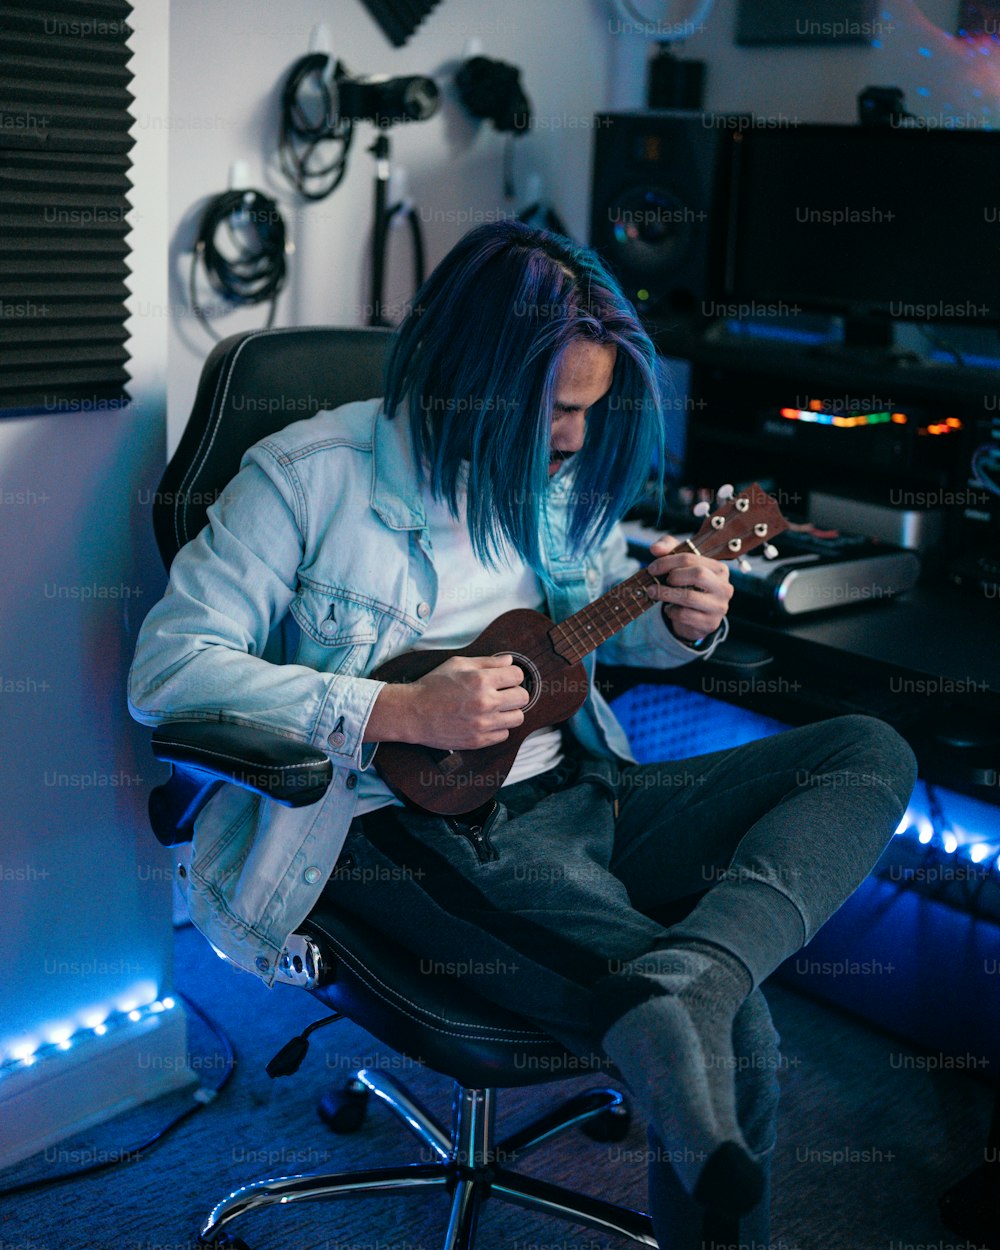 Un hombre con cabello azul tocando una guitarra